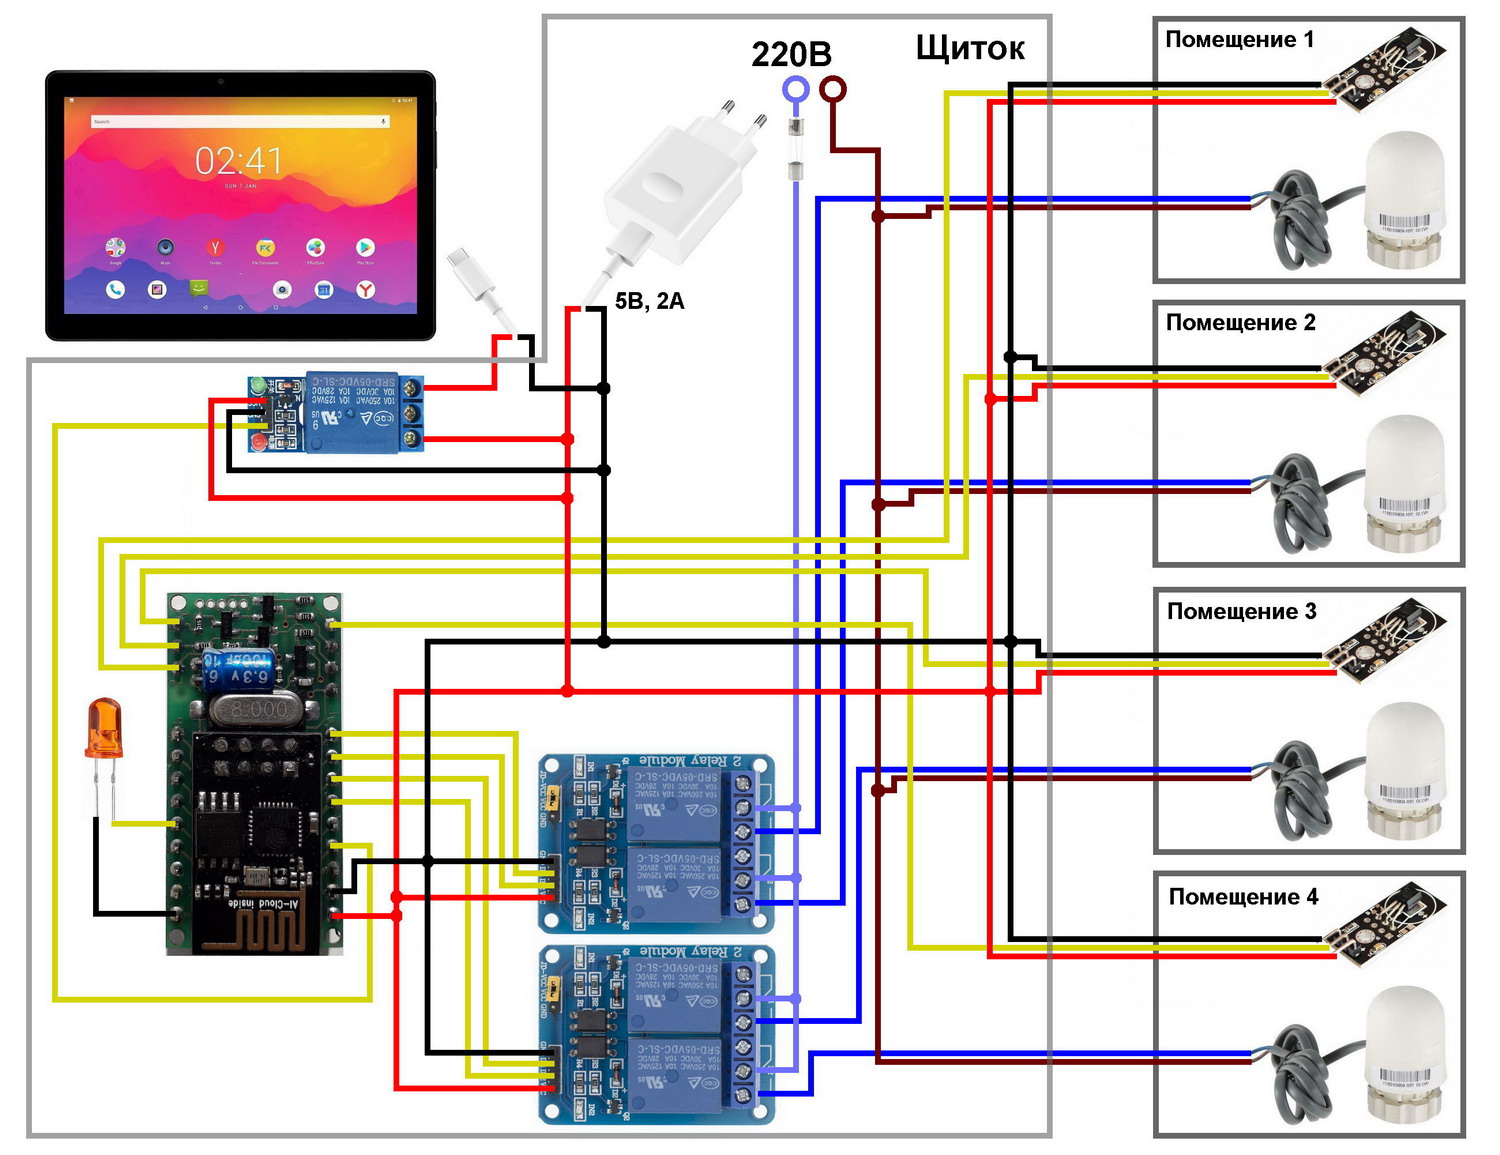 Smacont. Схема подключения датчиков температуры DS18B20, электромеханических реле и сервоприводов отопления к WiFi-модулю SC120